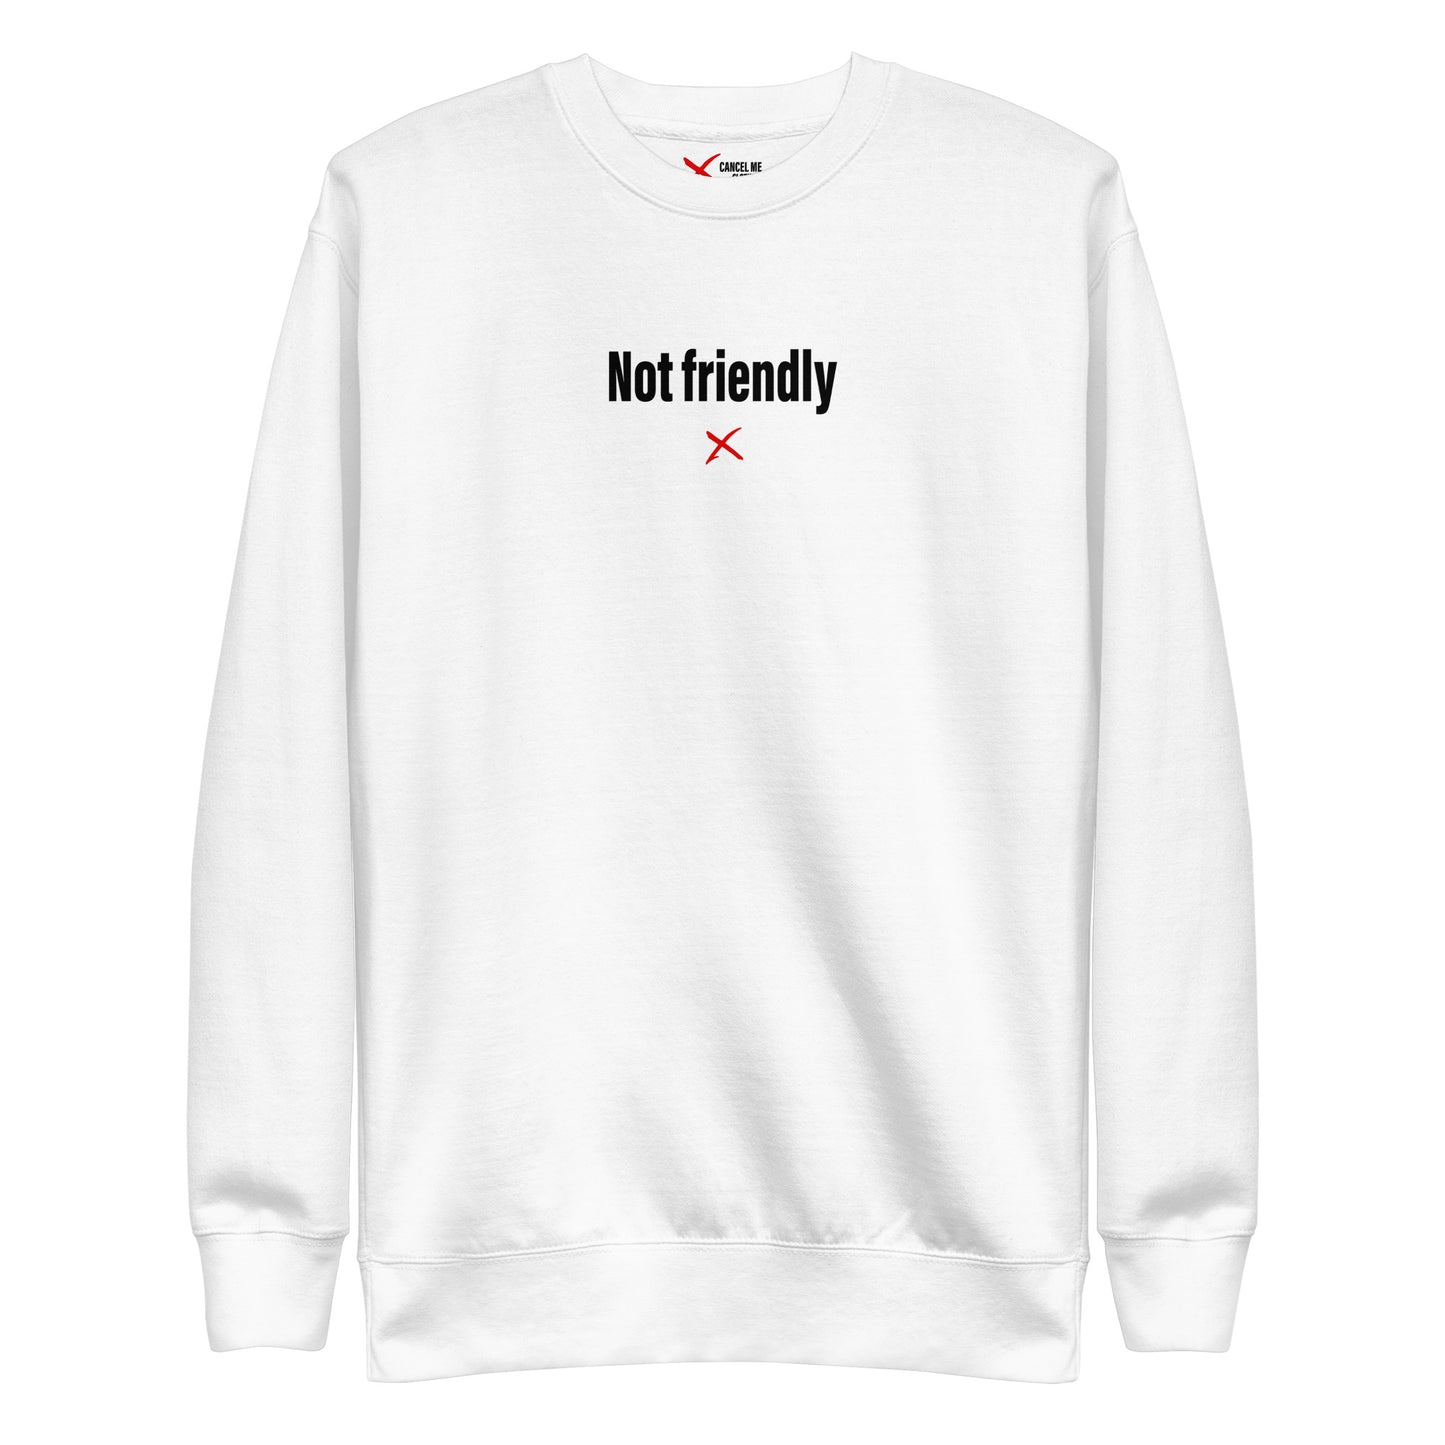 Not friendly - Sweatshirt